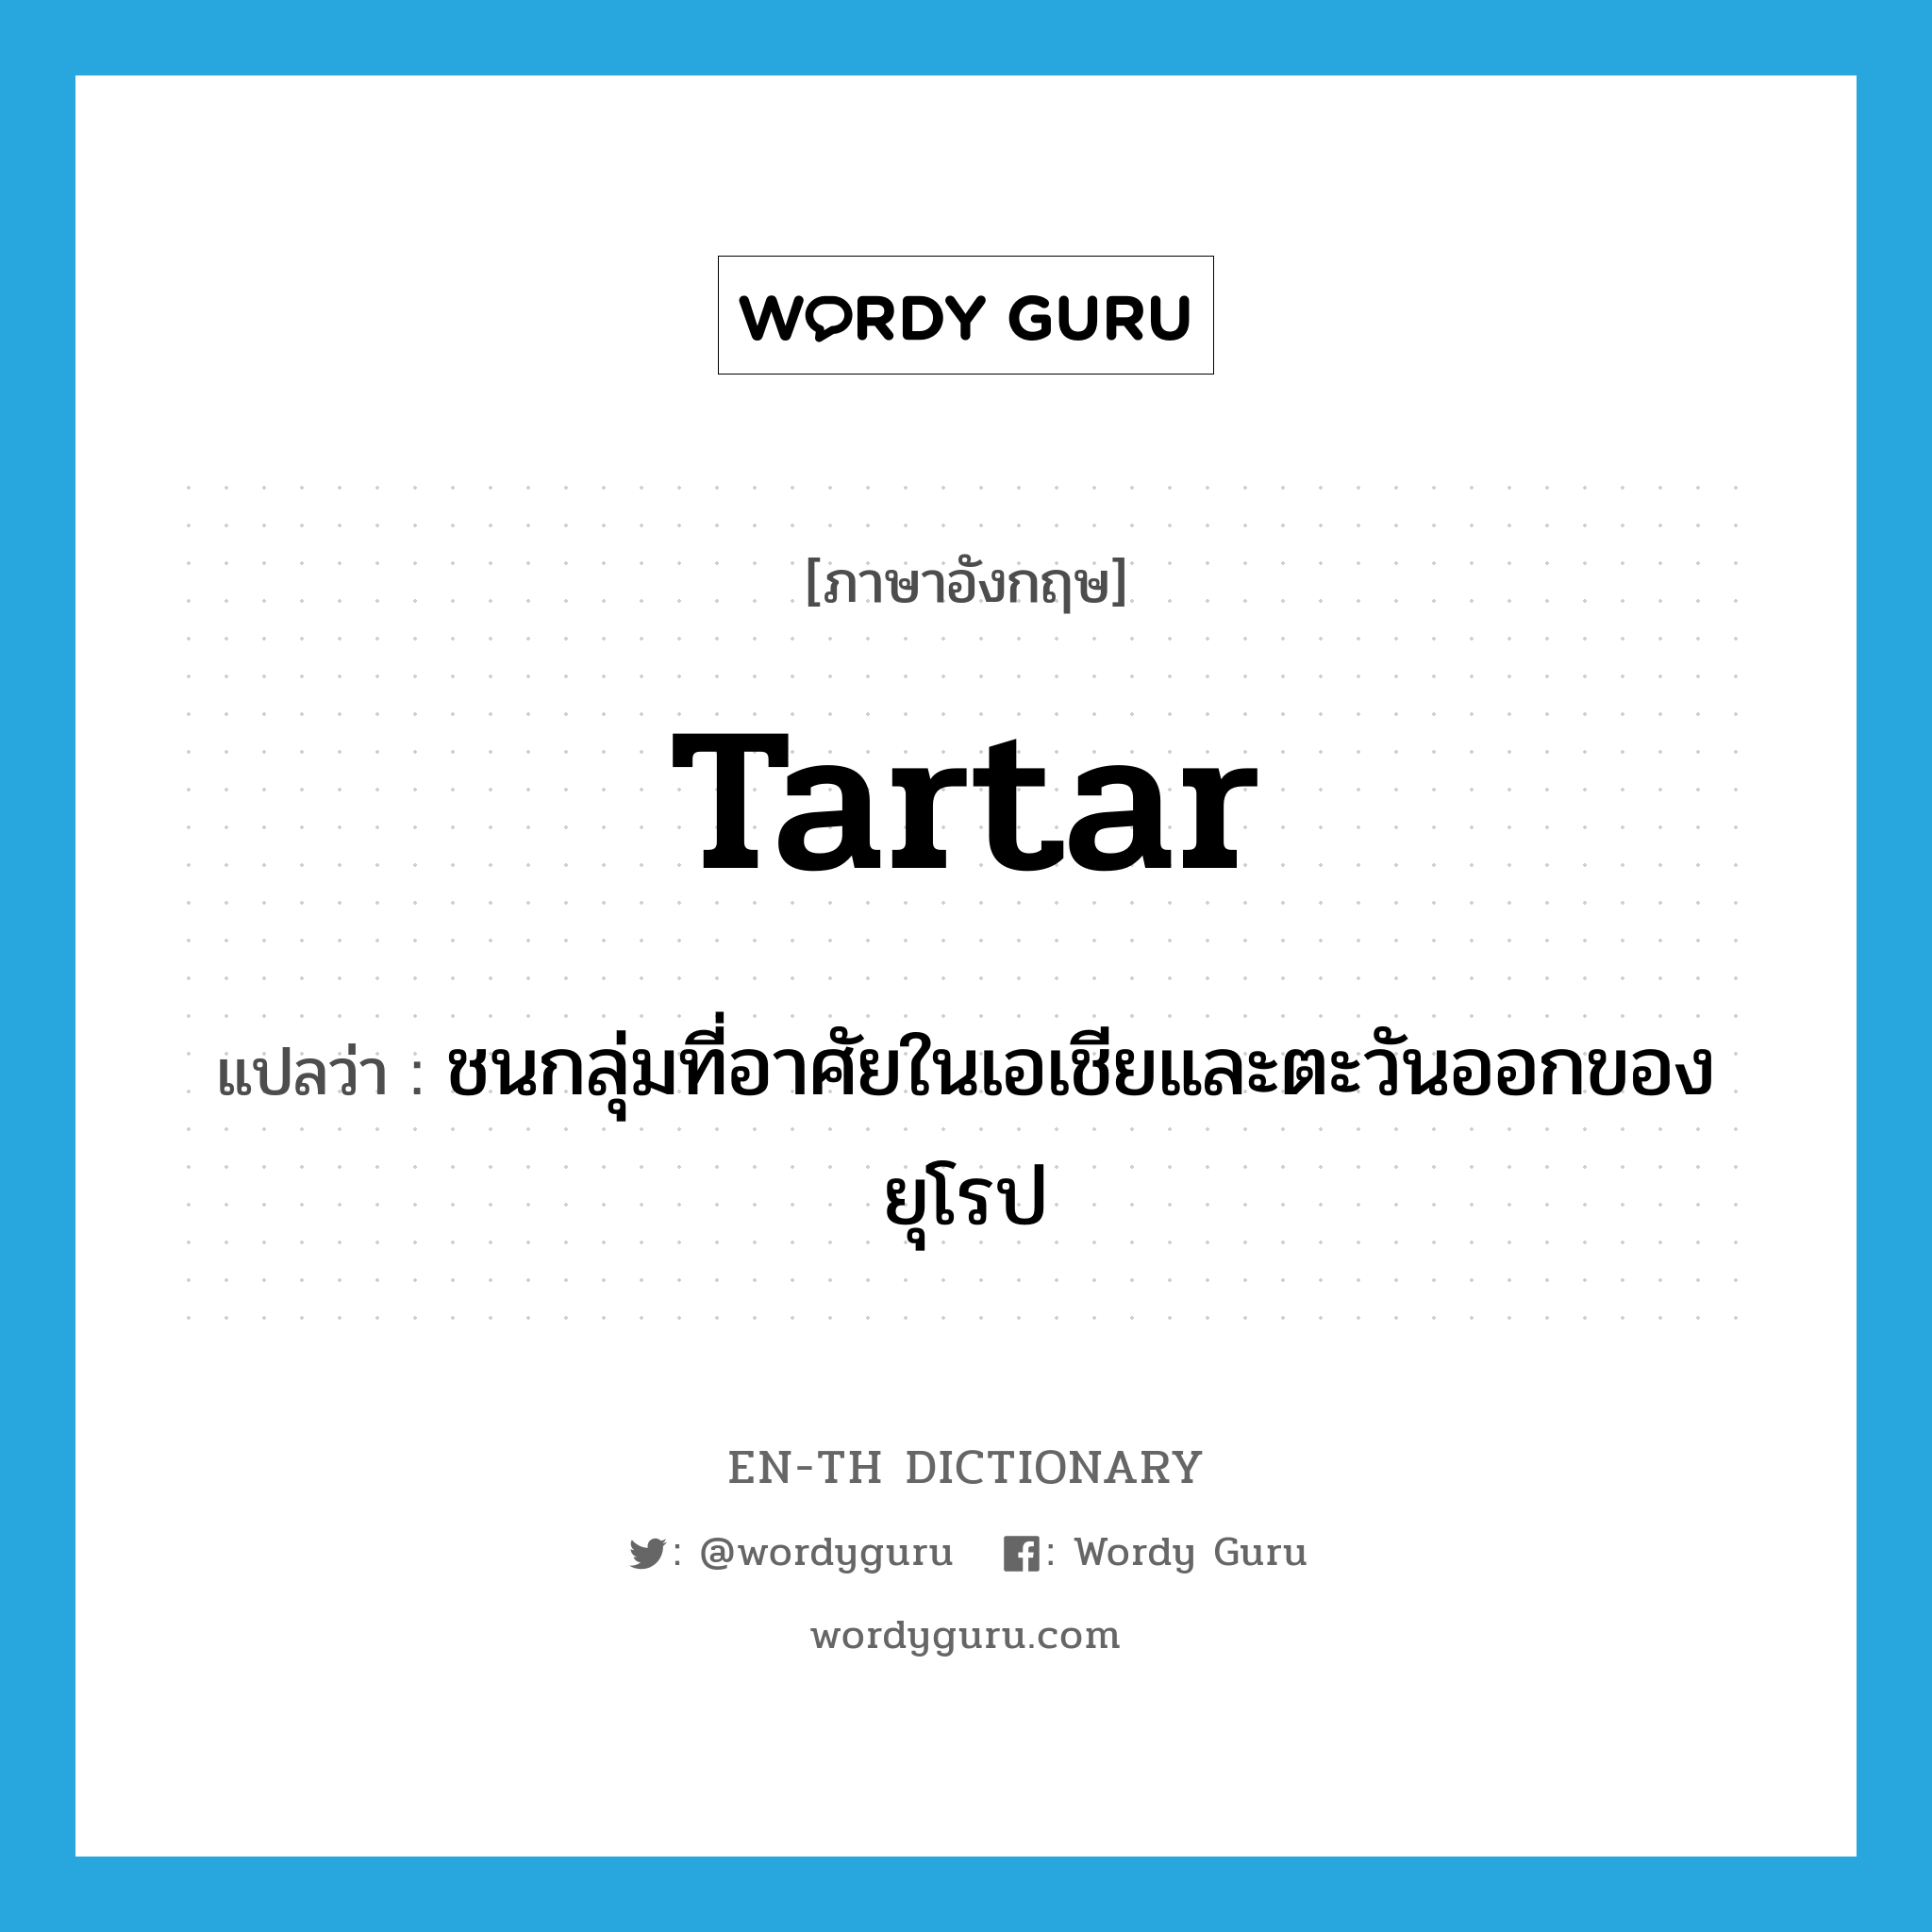 Tartar แปลว่า?, คำศัพท์ภาษาอังกฤษ Tartar แปลว่า ชนกลุ่มที่อาศัยในเอเชียและตะวันออกของยุโรป ประเภท N หมวด N